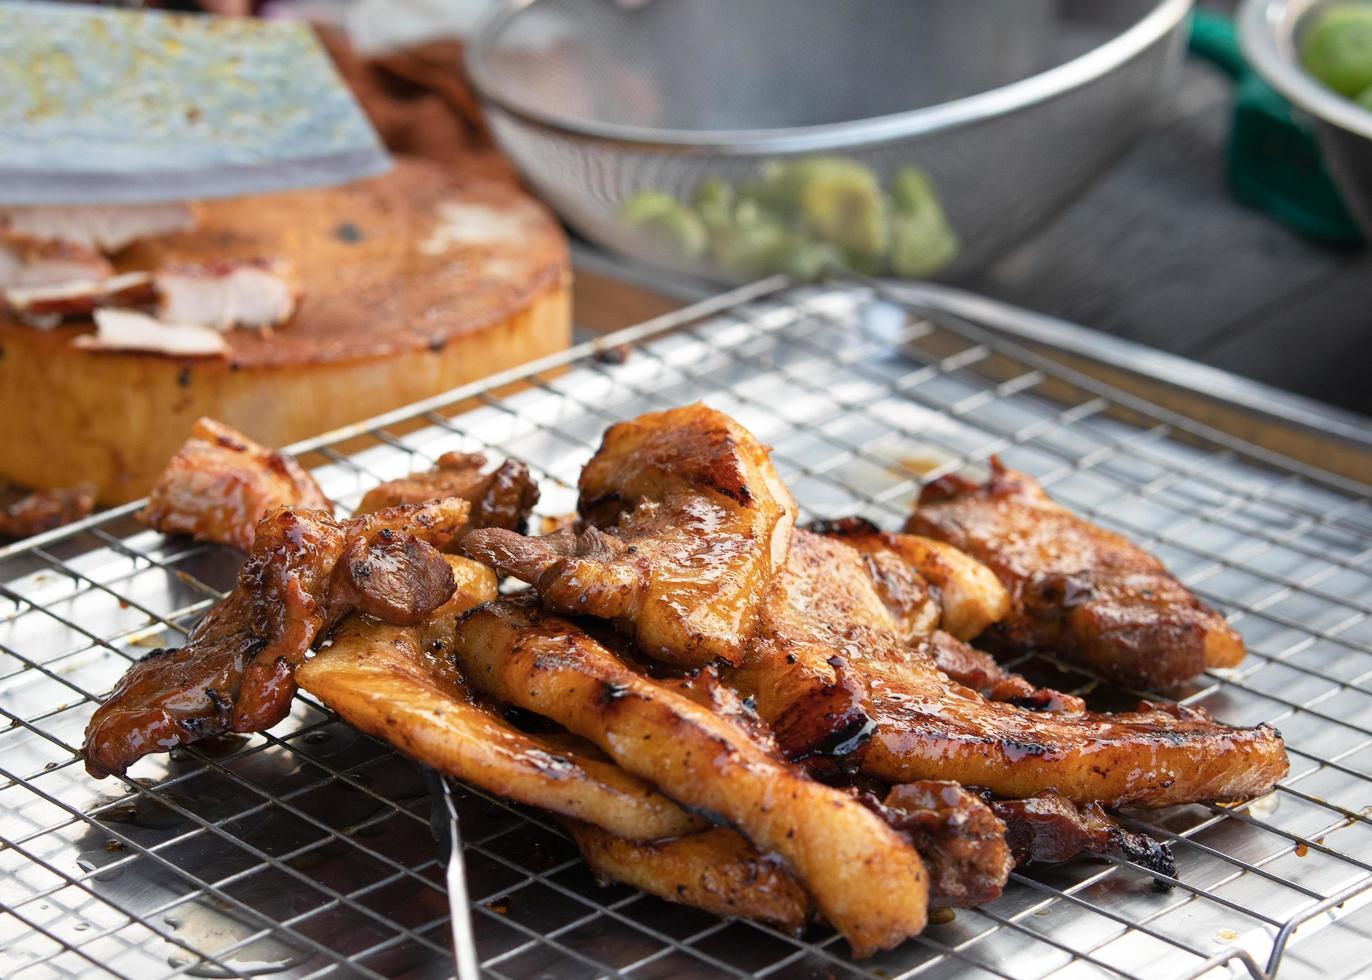 collo di maiale barbecue marinato alla griglia con salsa condita sulla griglia al cibo di strada in thailandia. concetto di cibo di strada tailandese asiatico foto